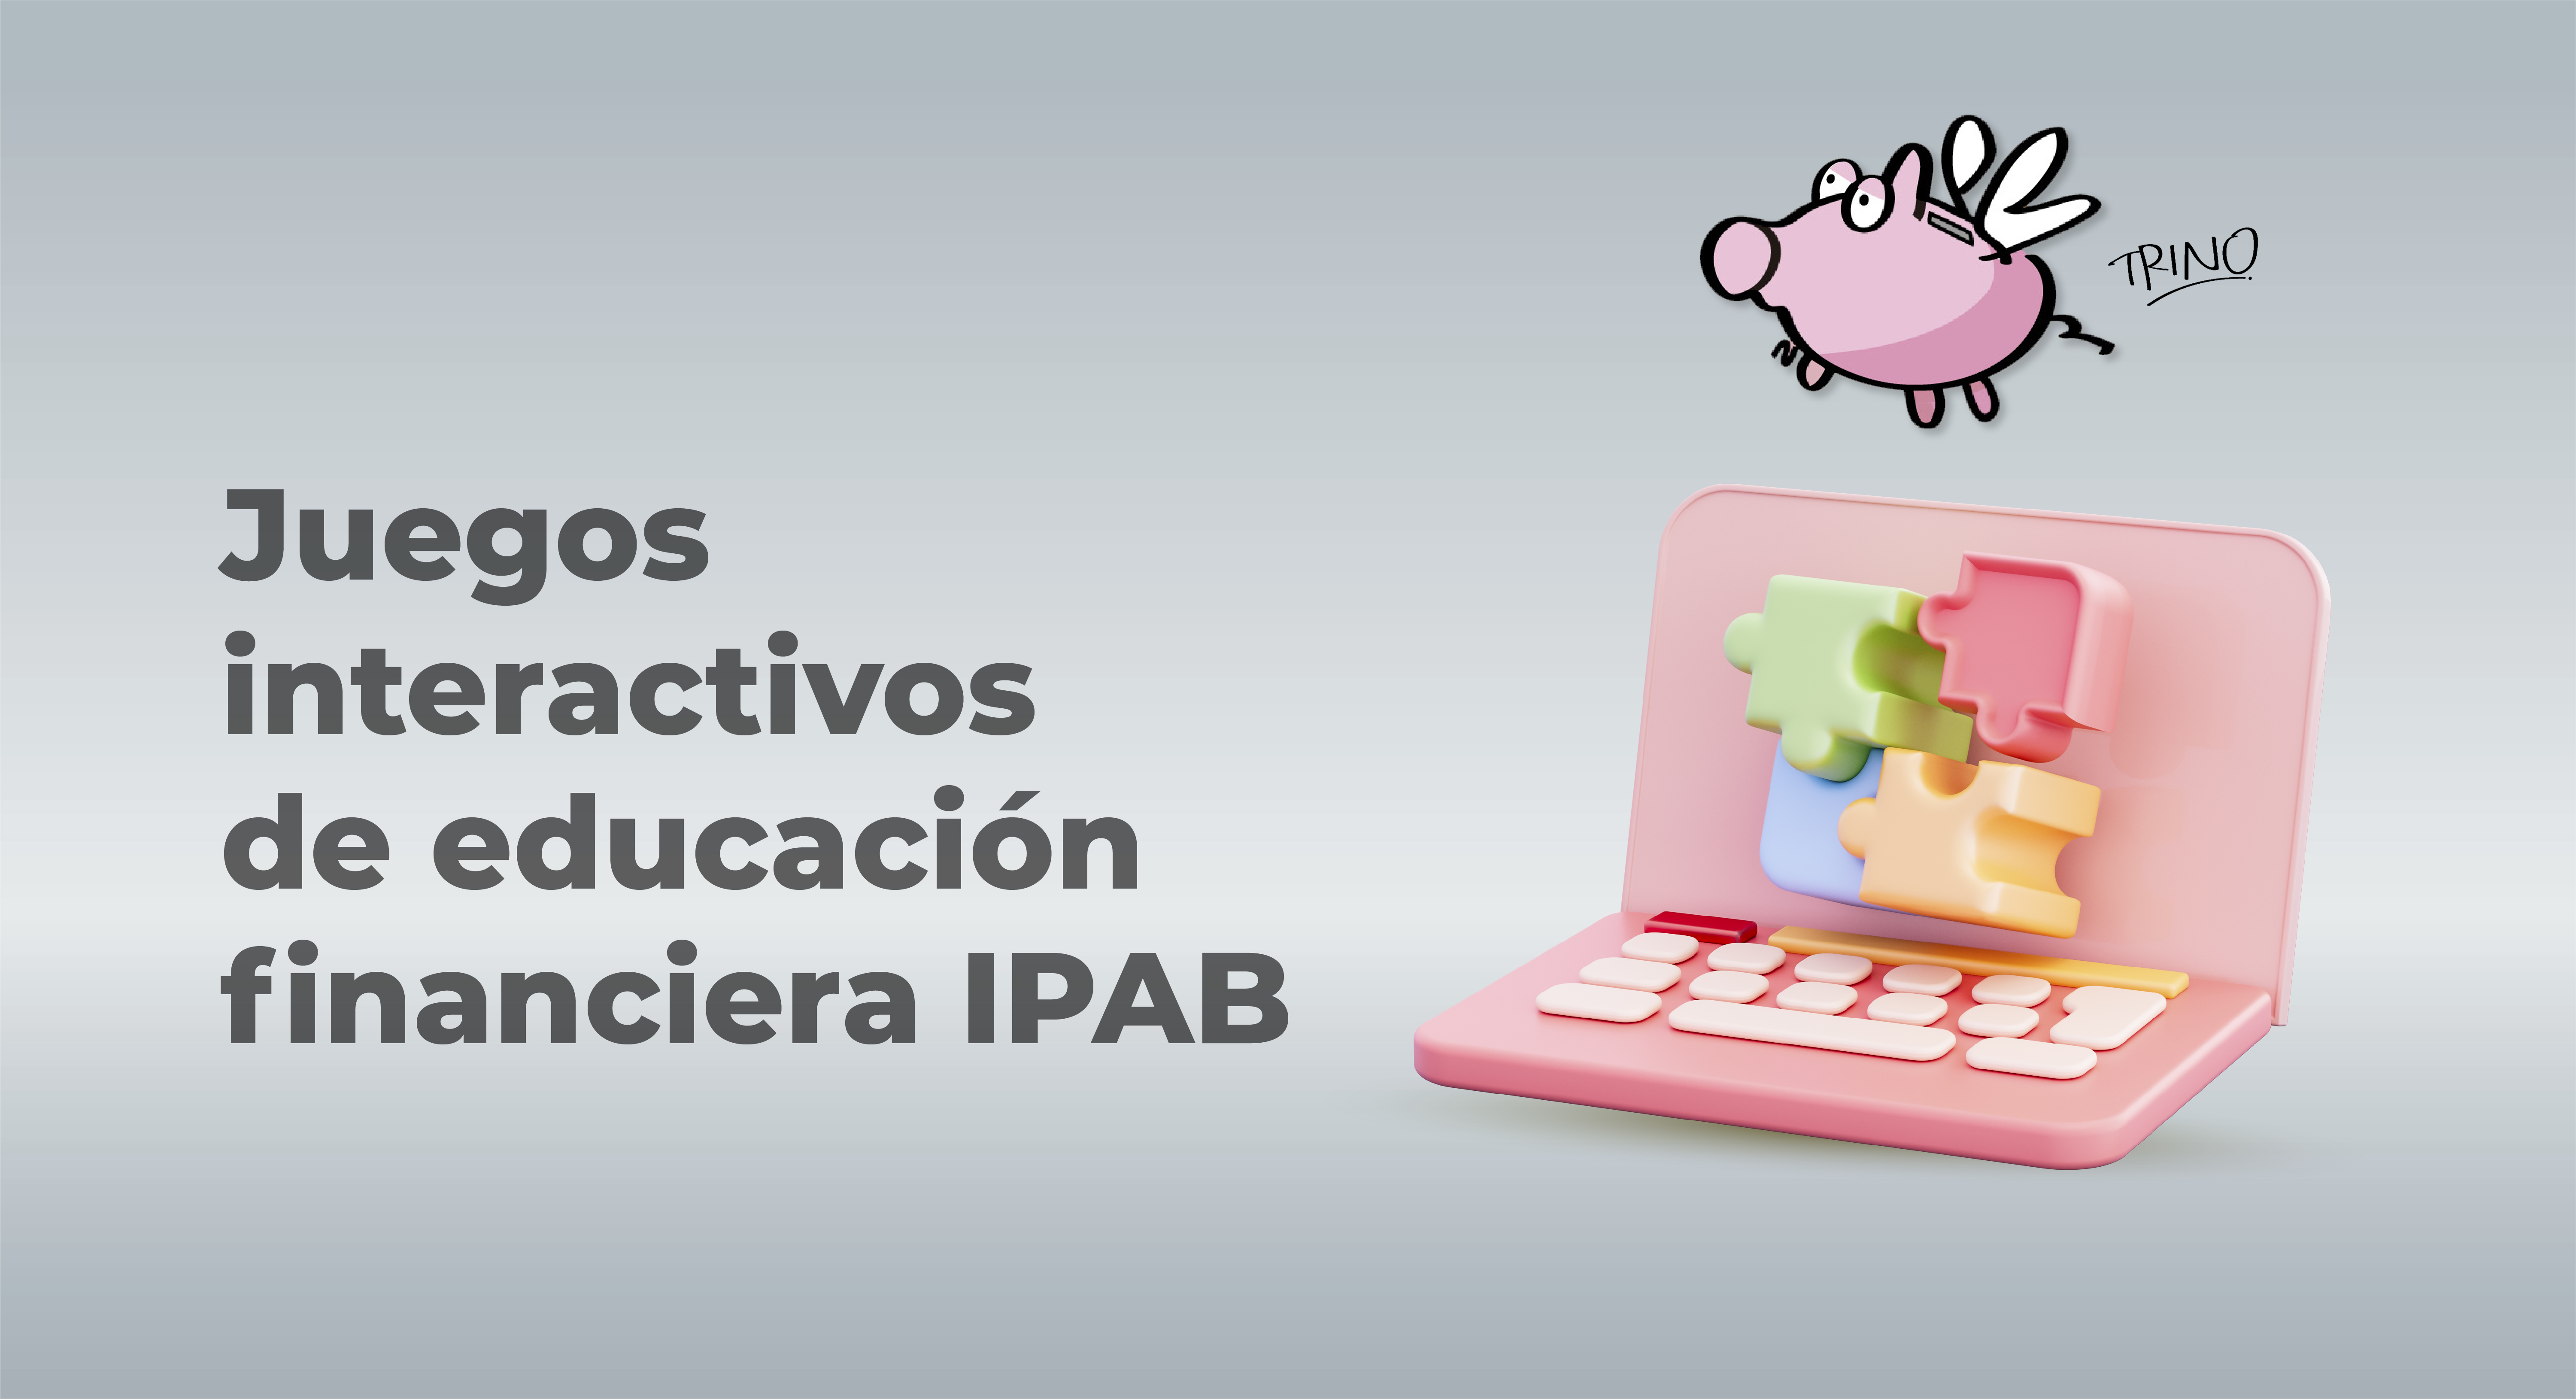 Juegos interactivos de Educación Financiera IPAB.